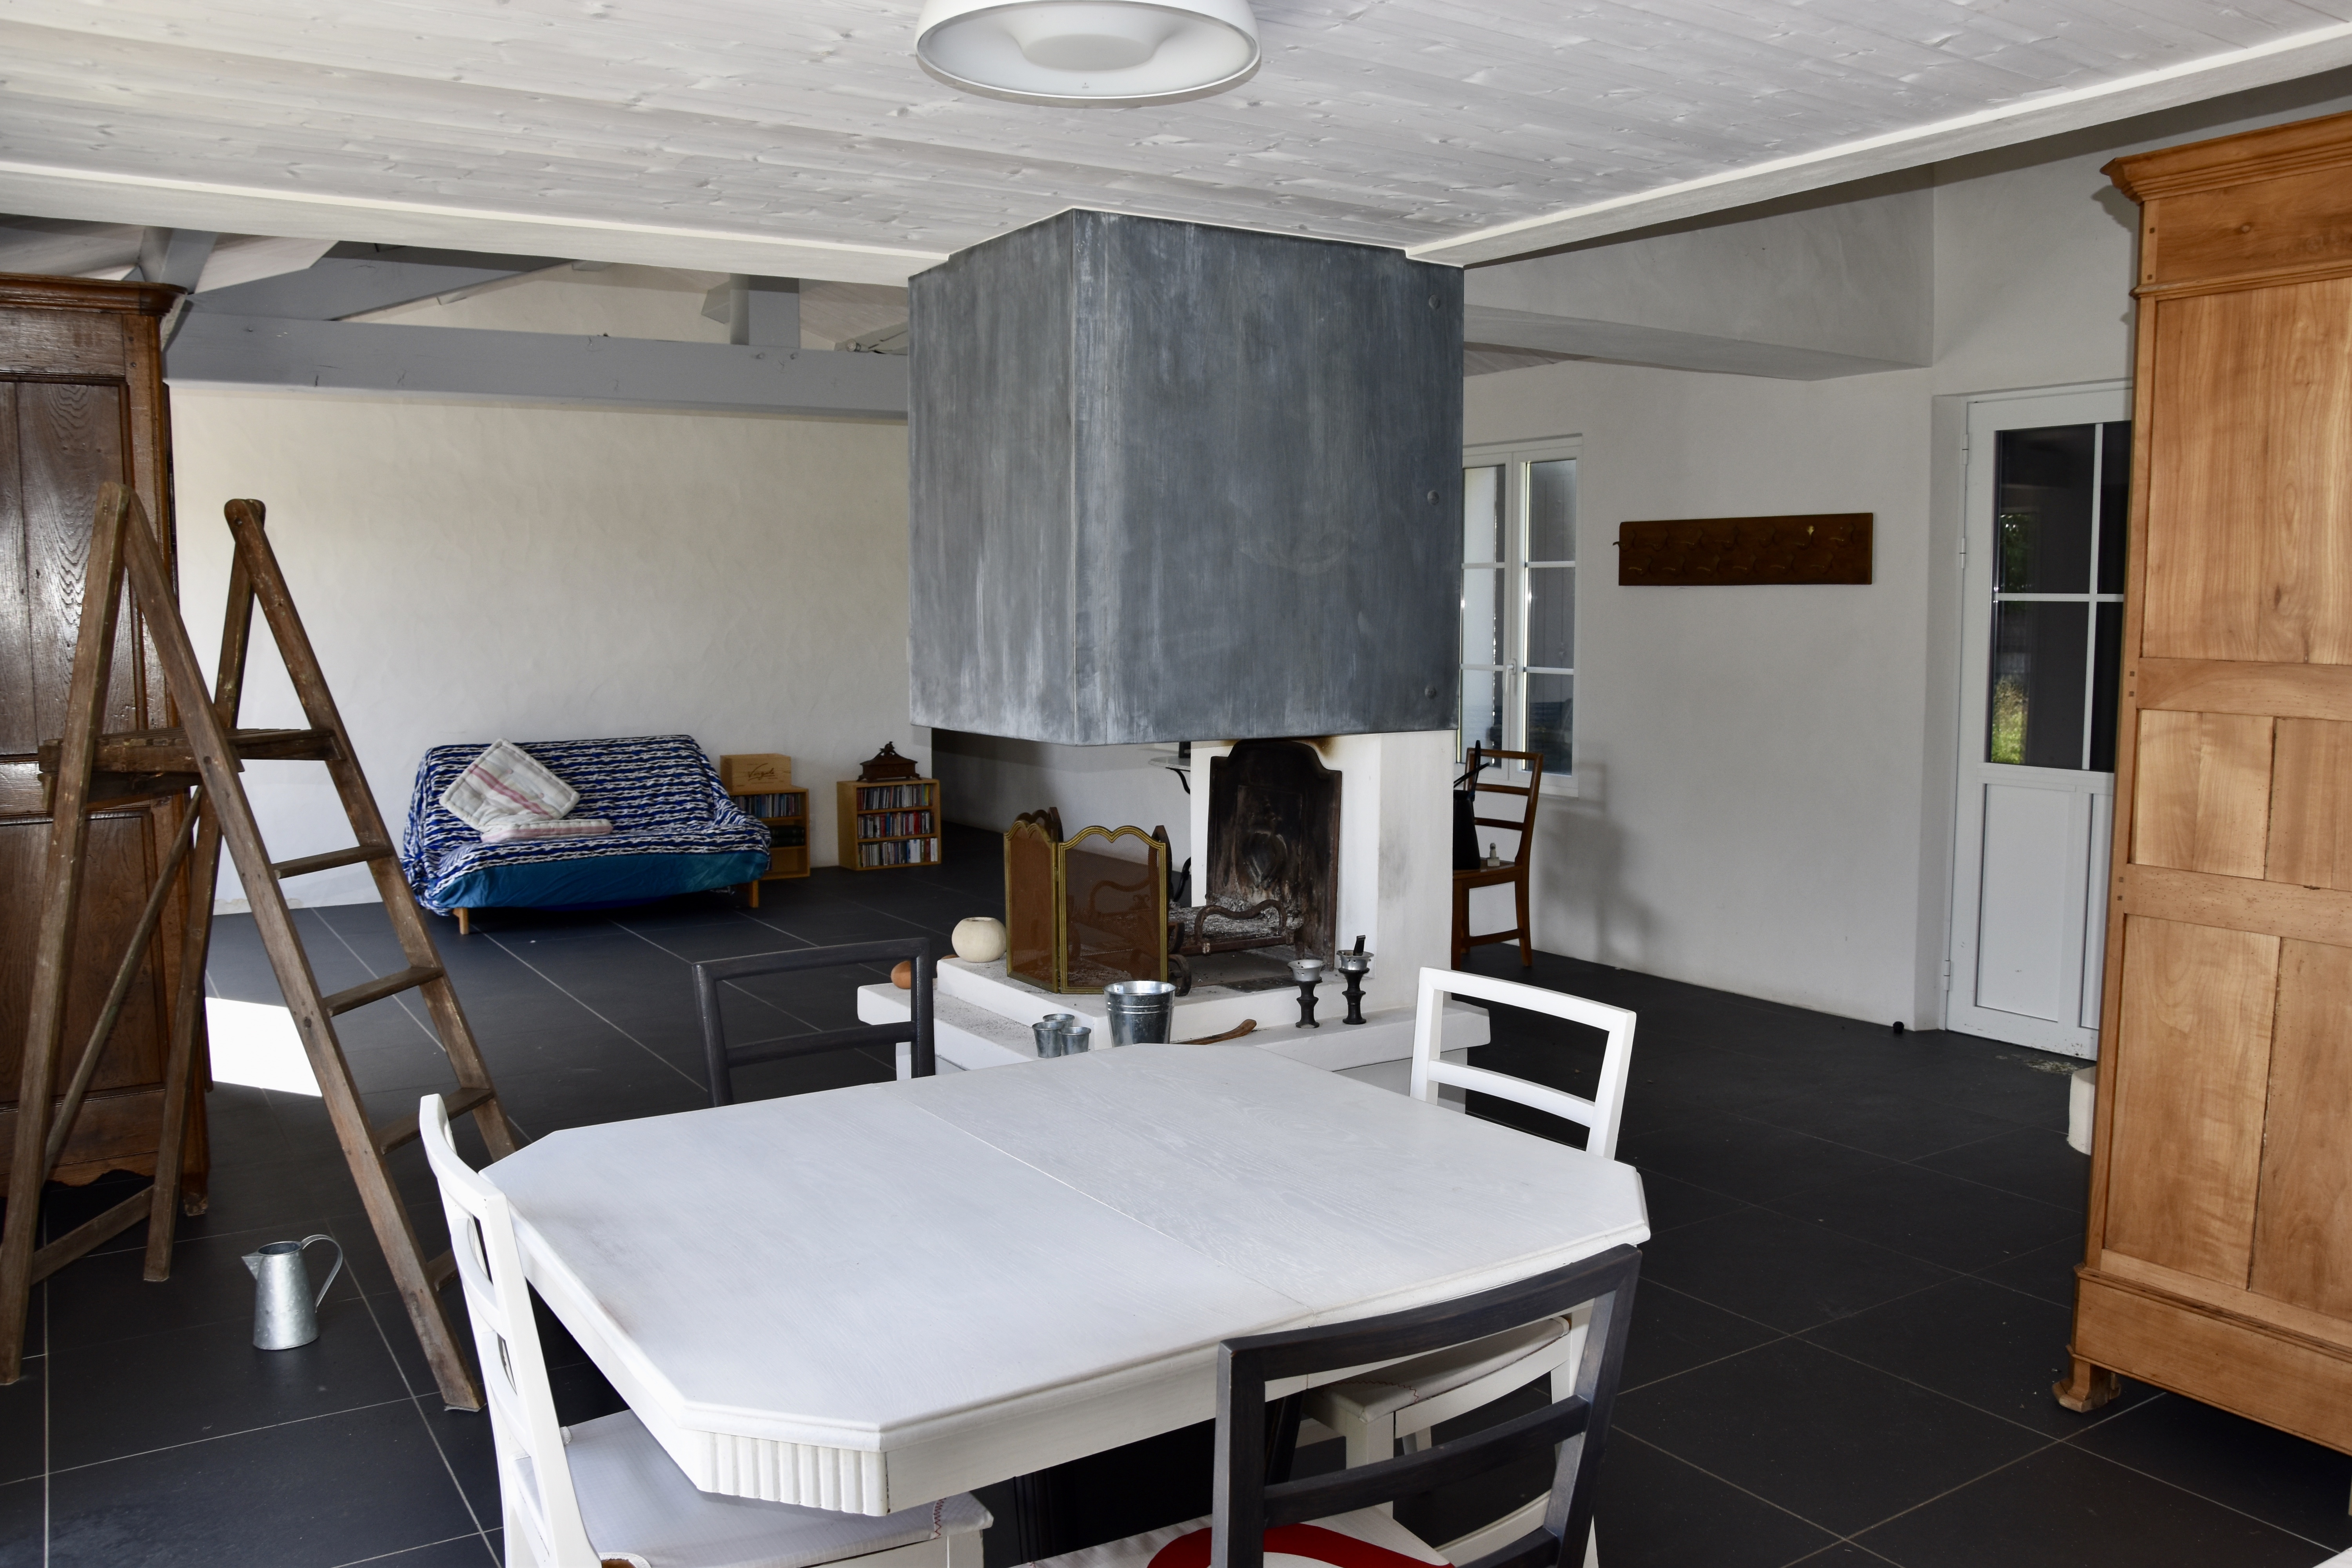 Vente maison 921 150 € Noirmoutier en l'Ile